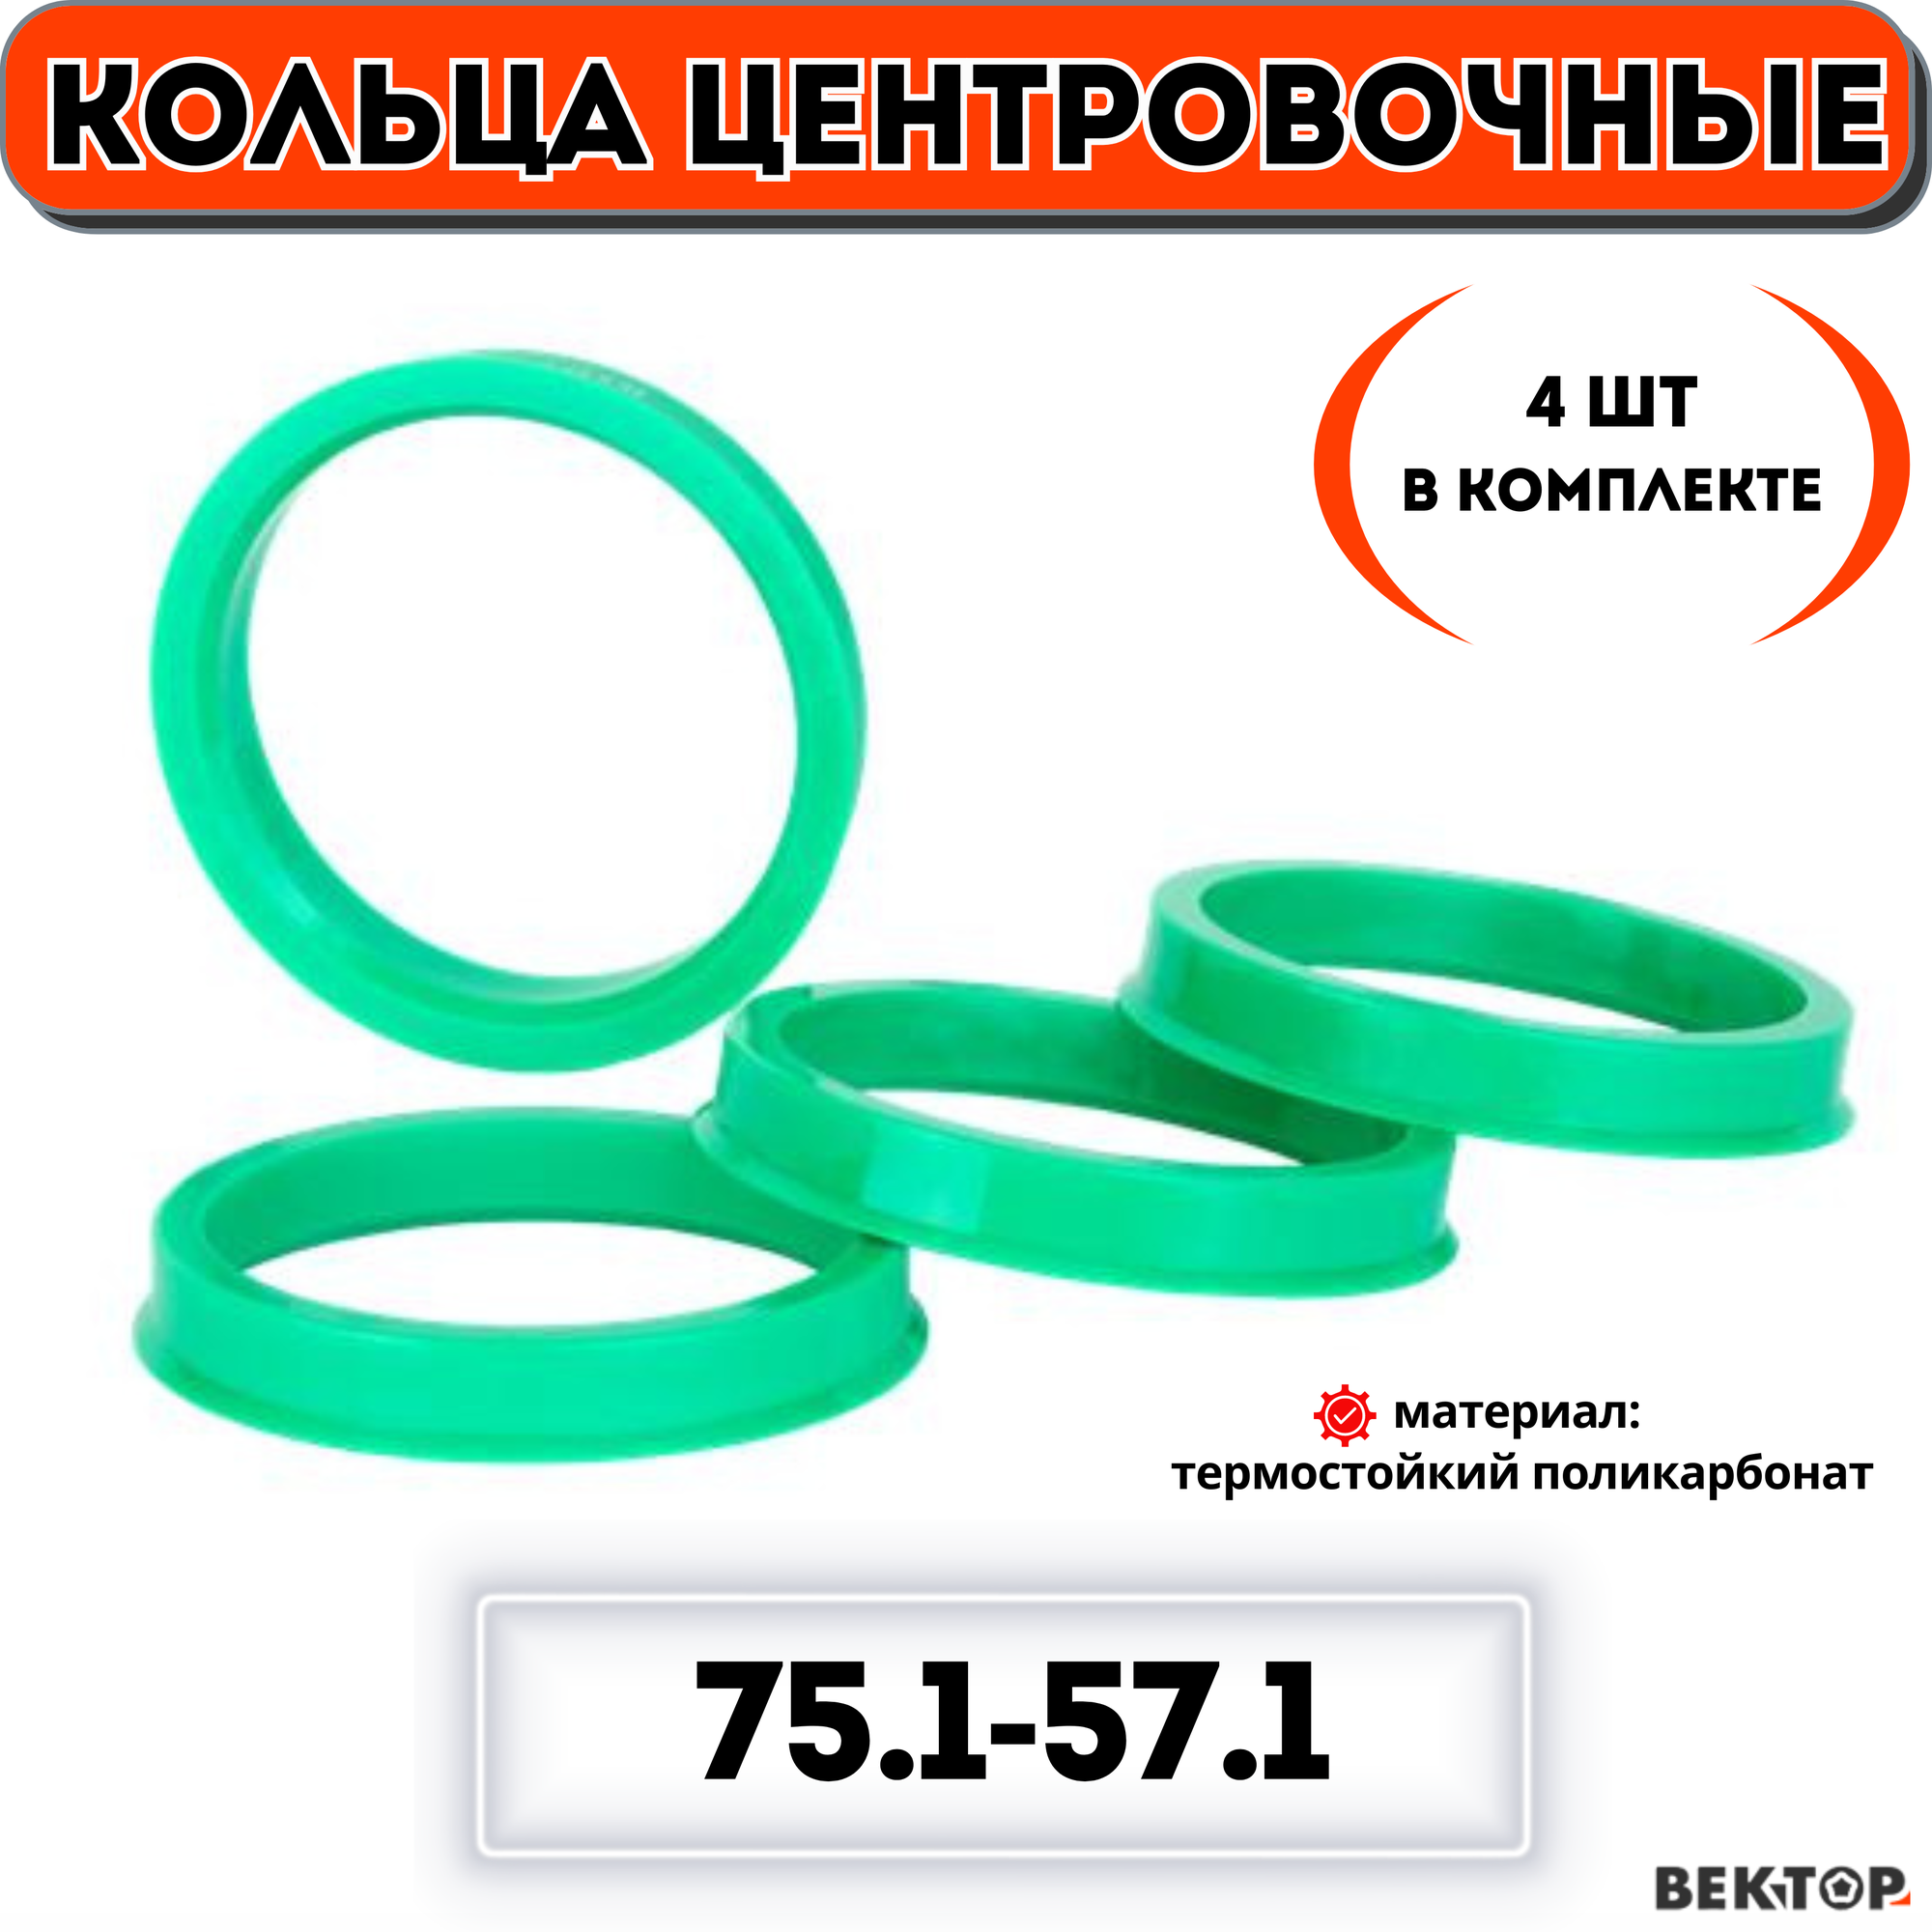 Центровочные кольца для автомобильных дисков 751-571 "вектор" (комплект 4 шт.)